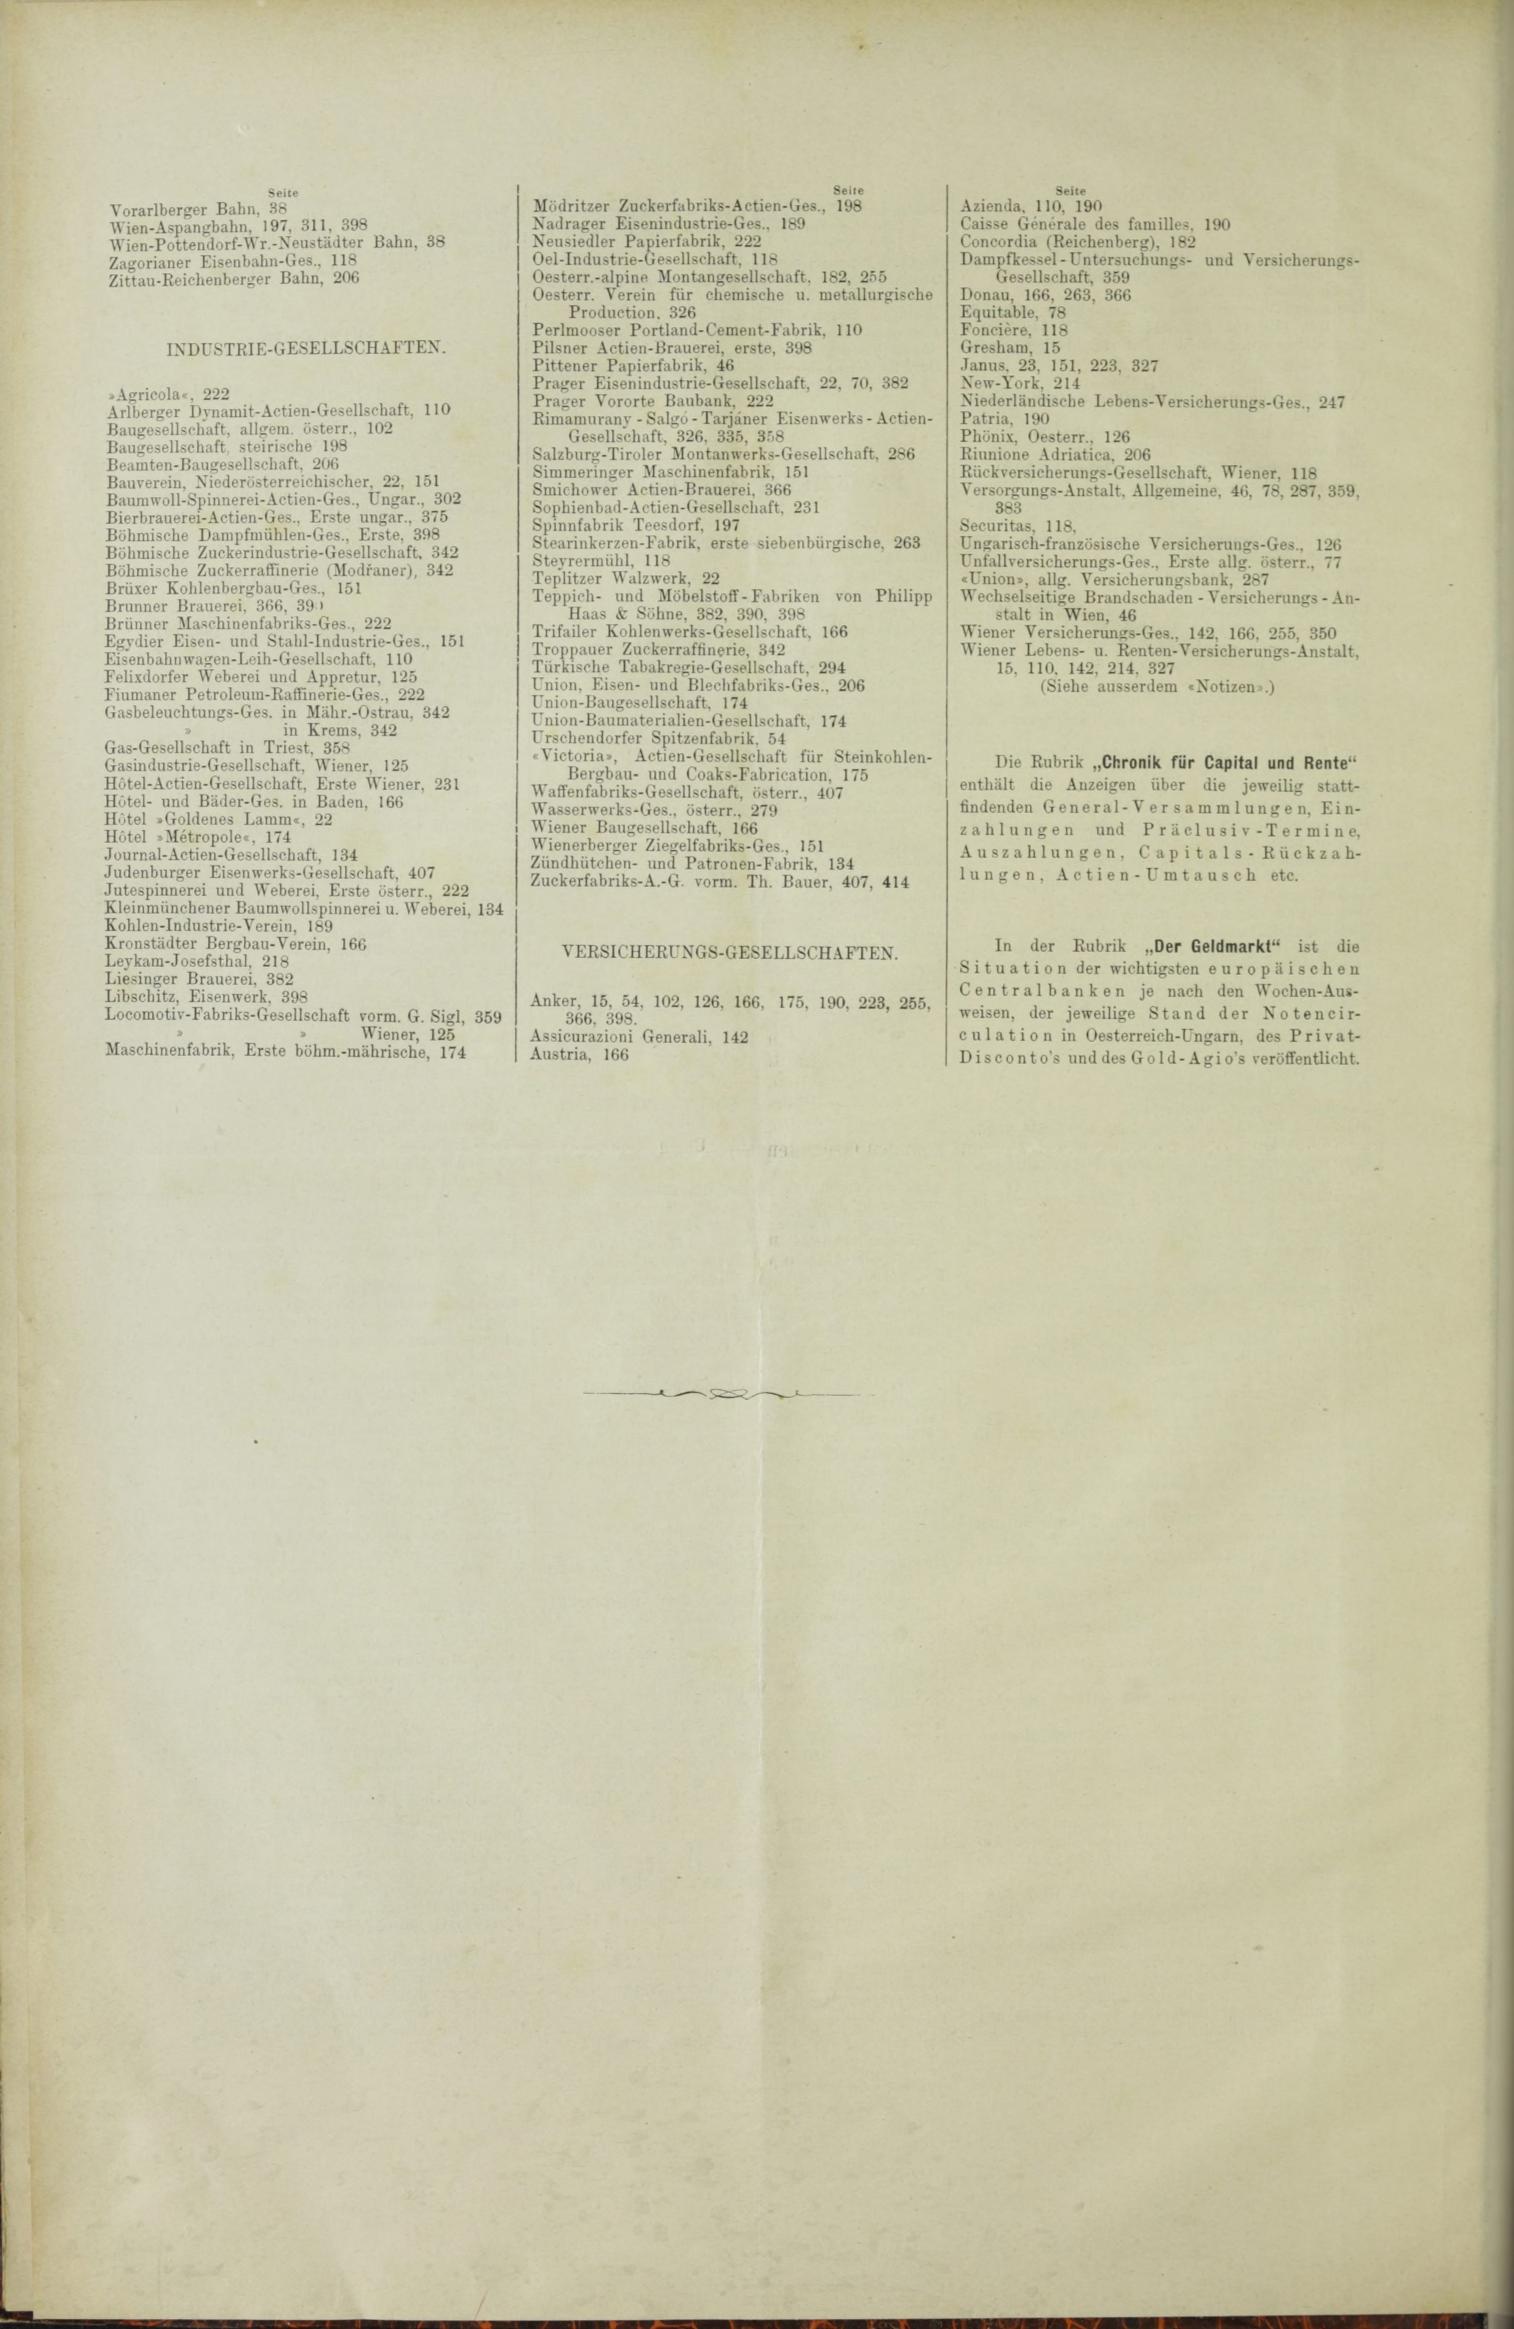 Der Tresor 25.03.1886 - Seite 12